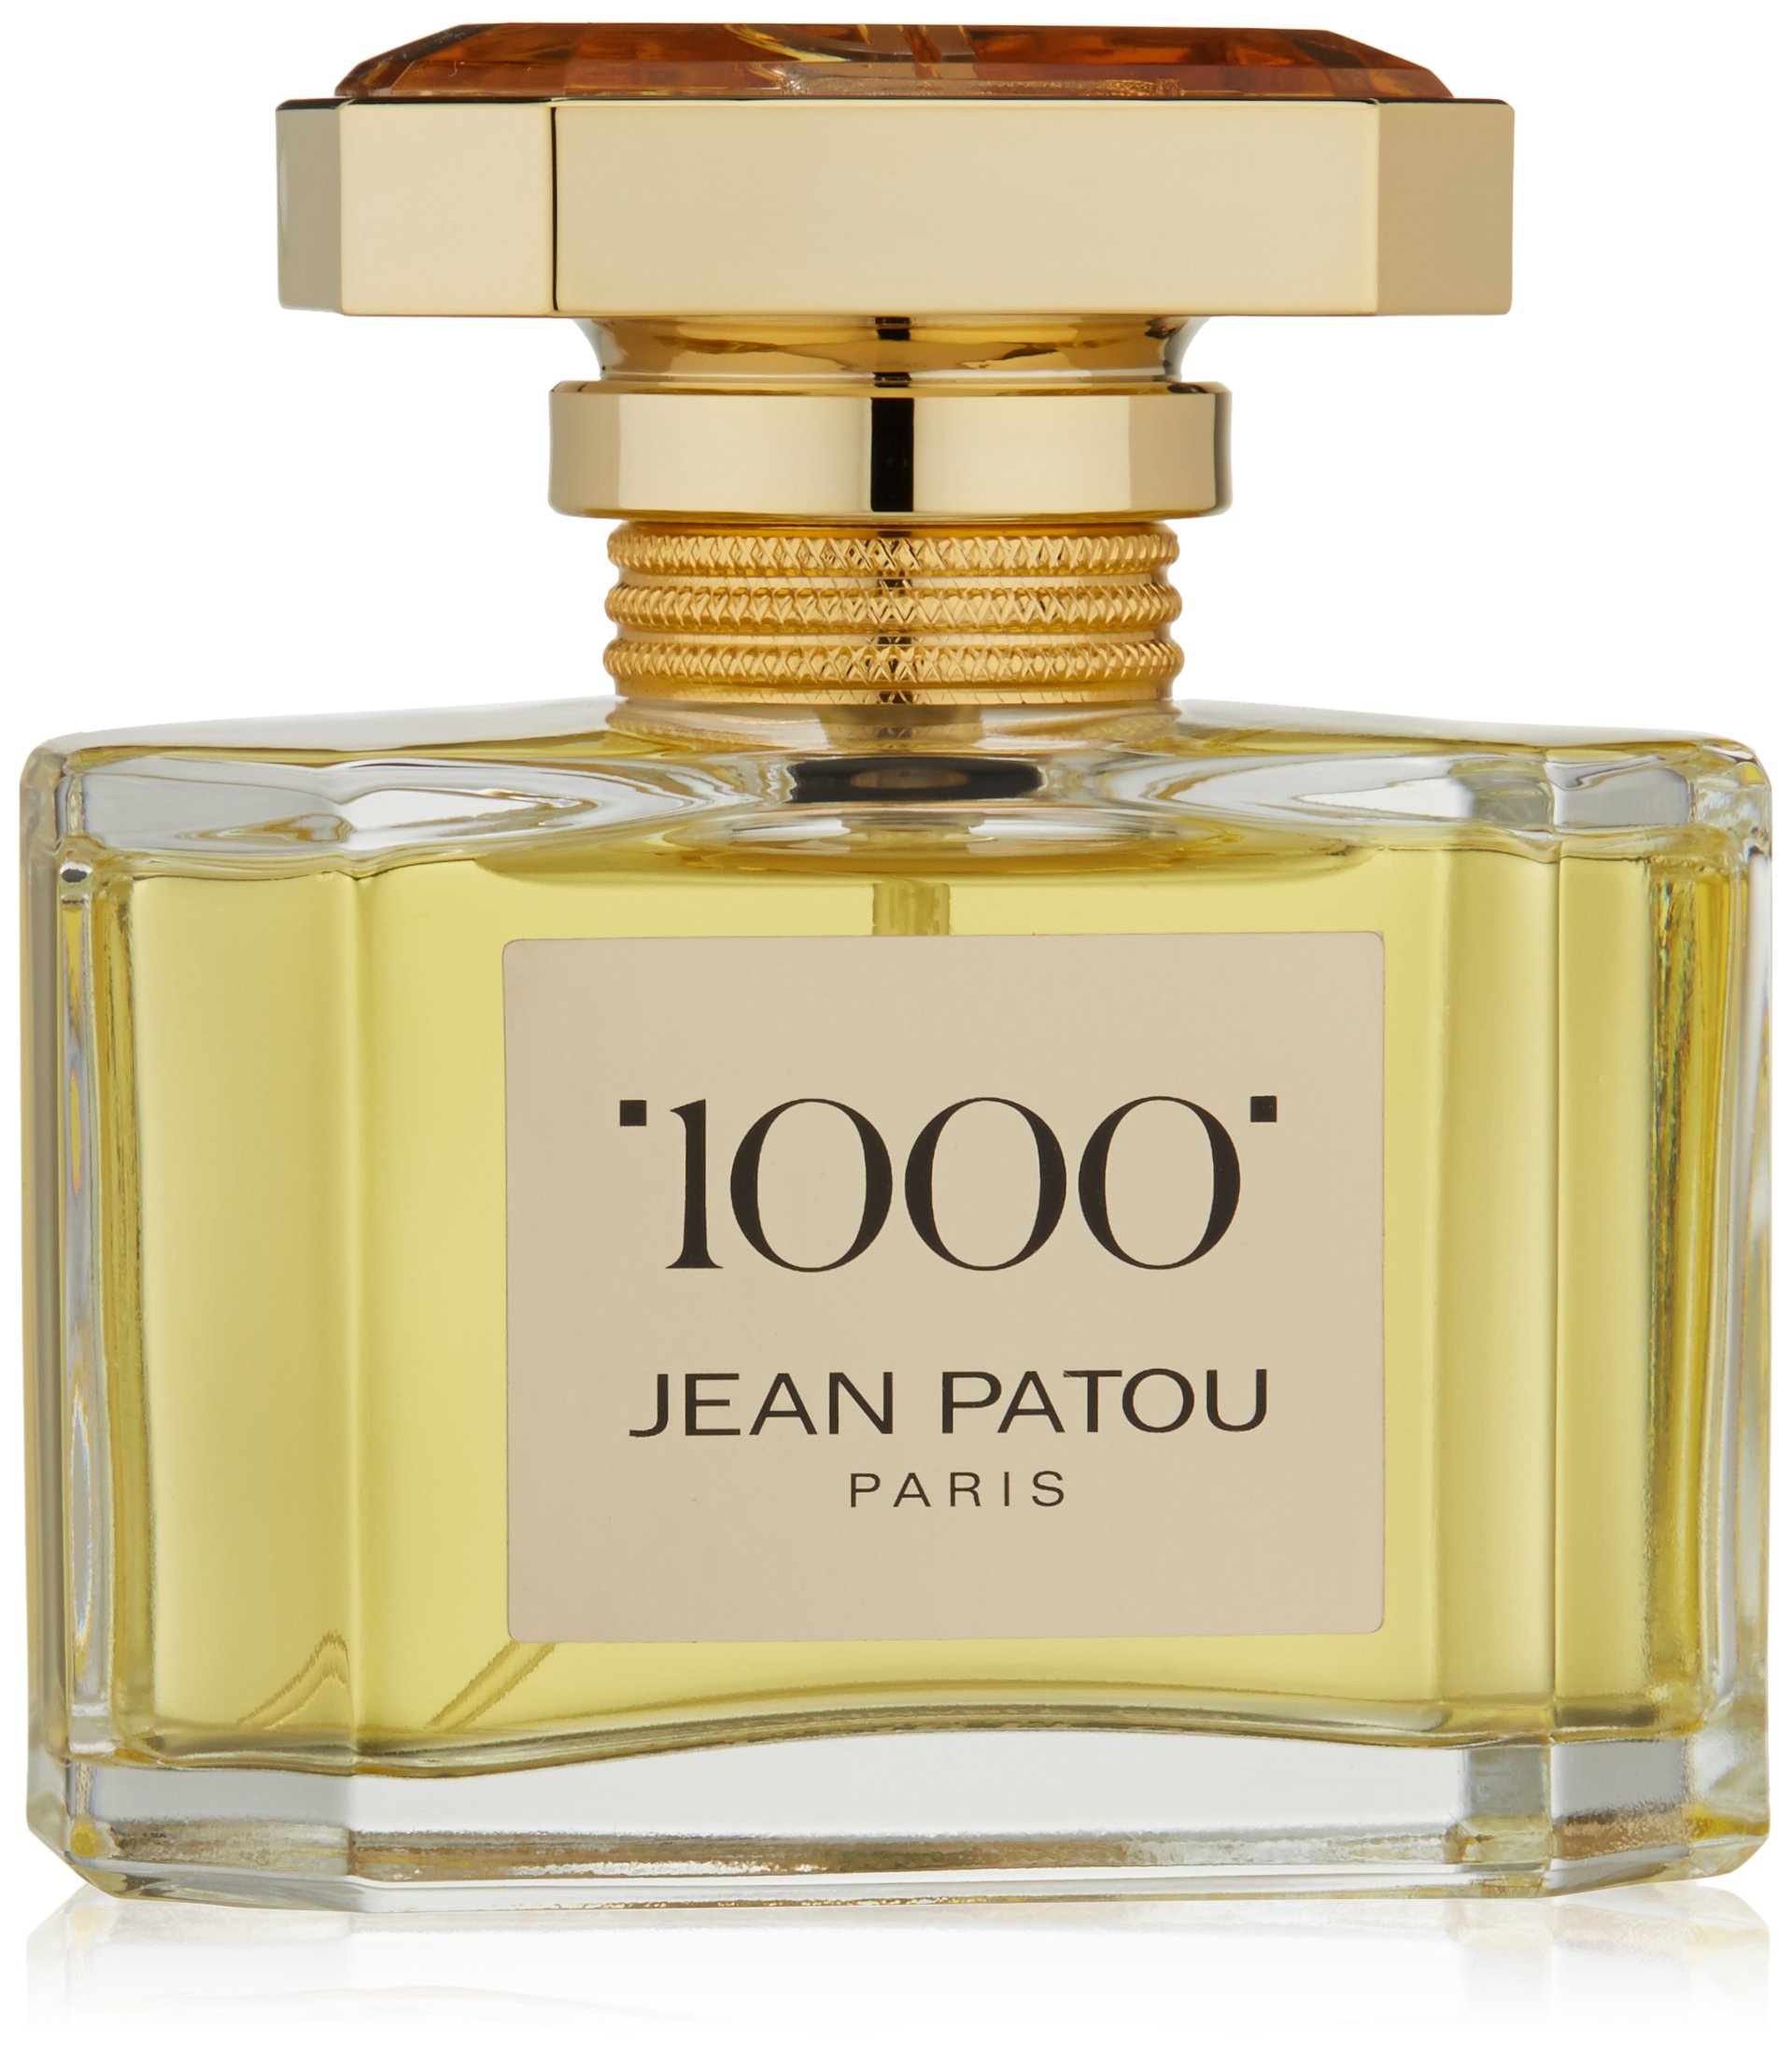 Jean Patou 1000 femme / women, Eau de Toilette, Vaporisateur / Spray 50 ml